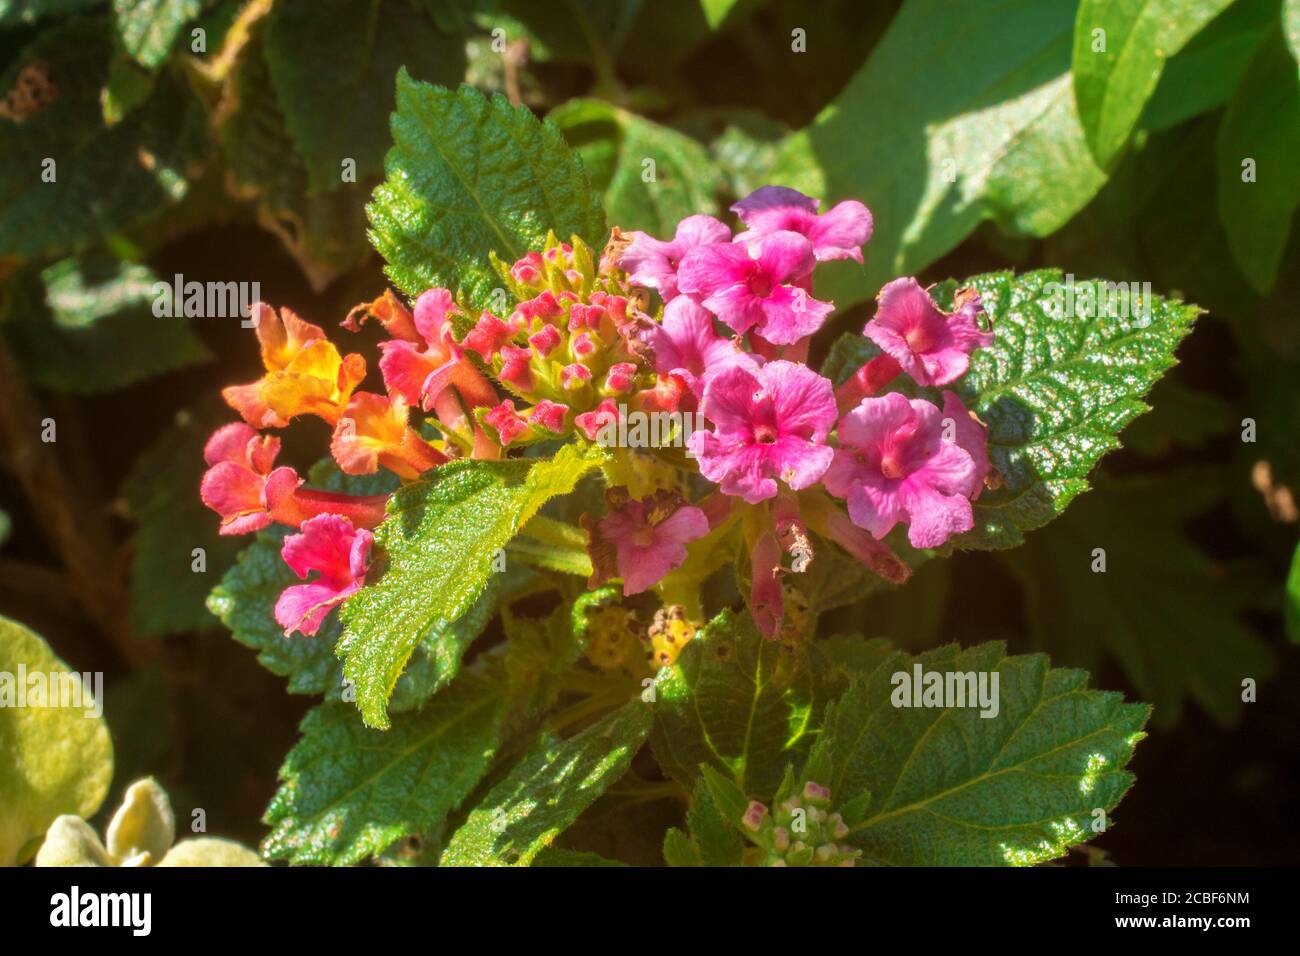 Lantana Camara in fiore, un arbusto decorativo tropicale fiorito con incredibili fiori colorati Foto Stock